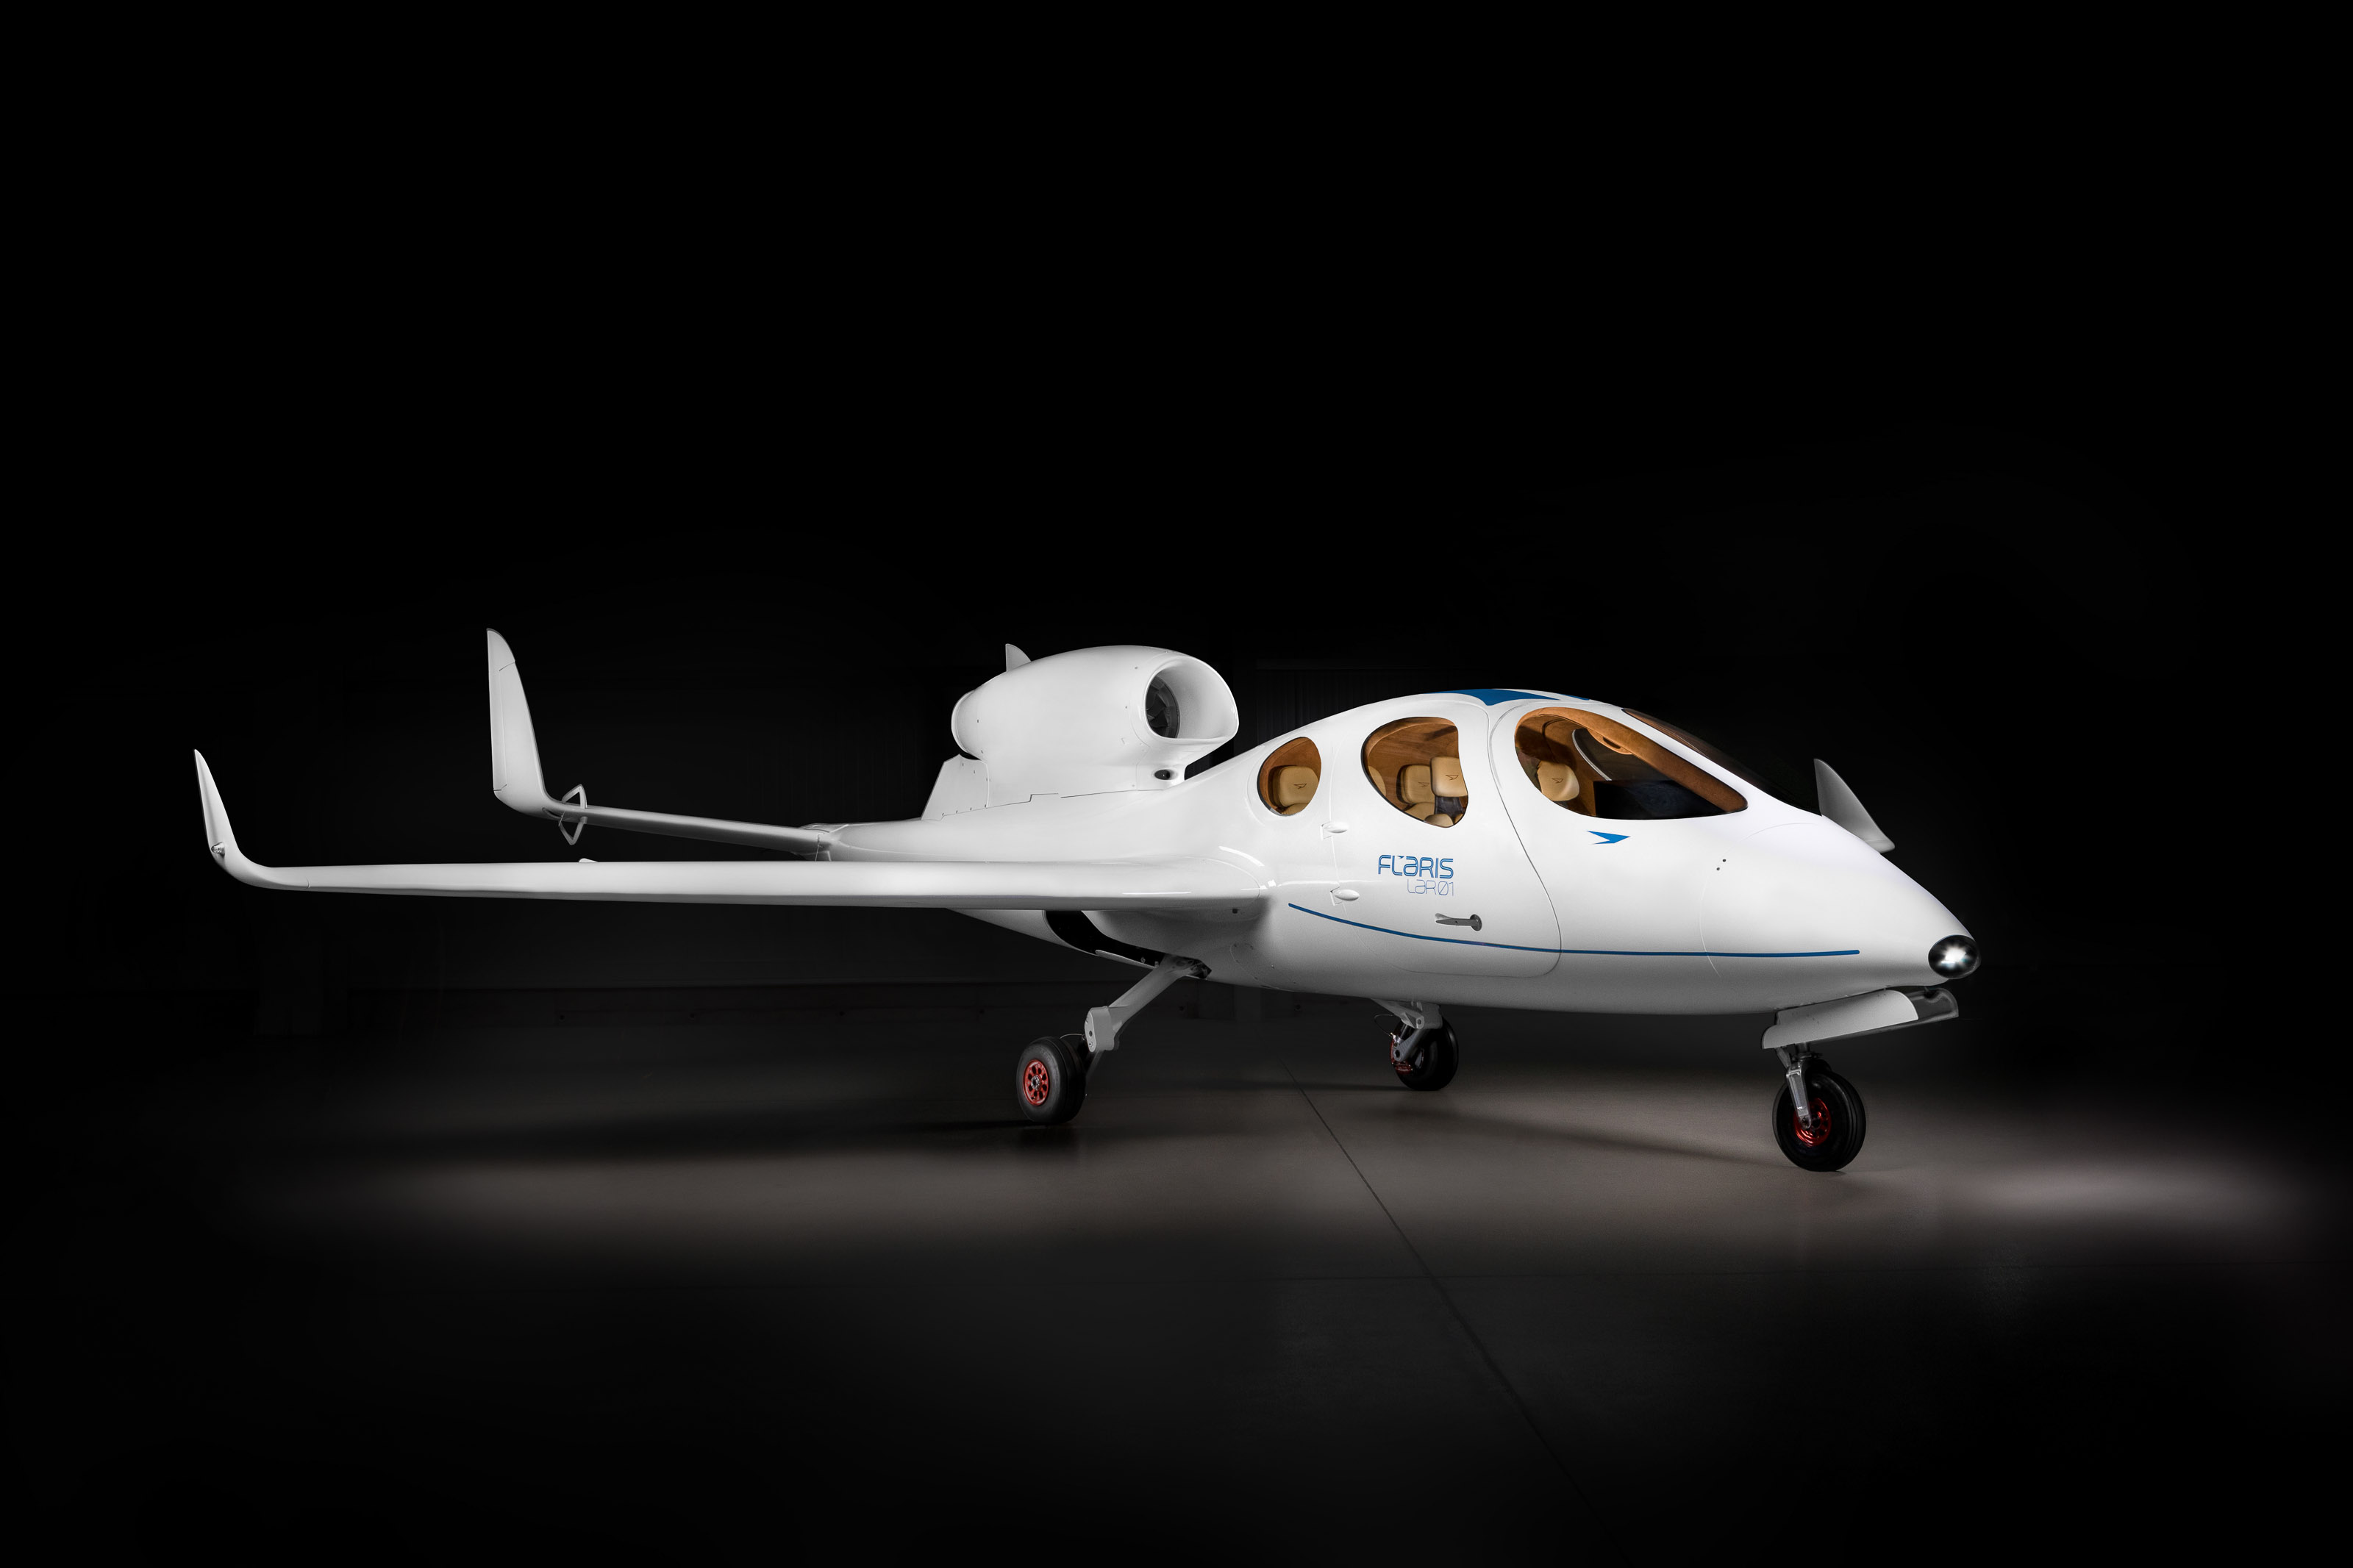 Edge Group z siedzibą w Zjednoczonych Emiratach Arabskich nabyła 50% udziałów w polskim producencie samolotów osobistych Flaris